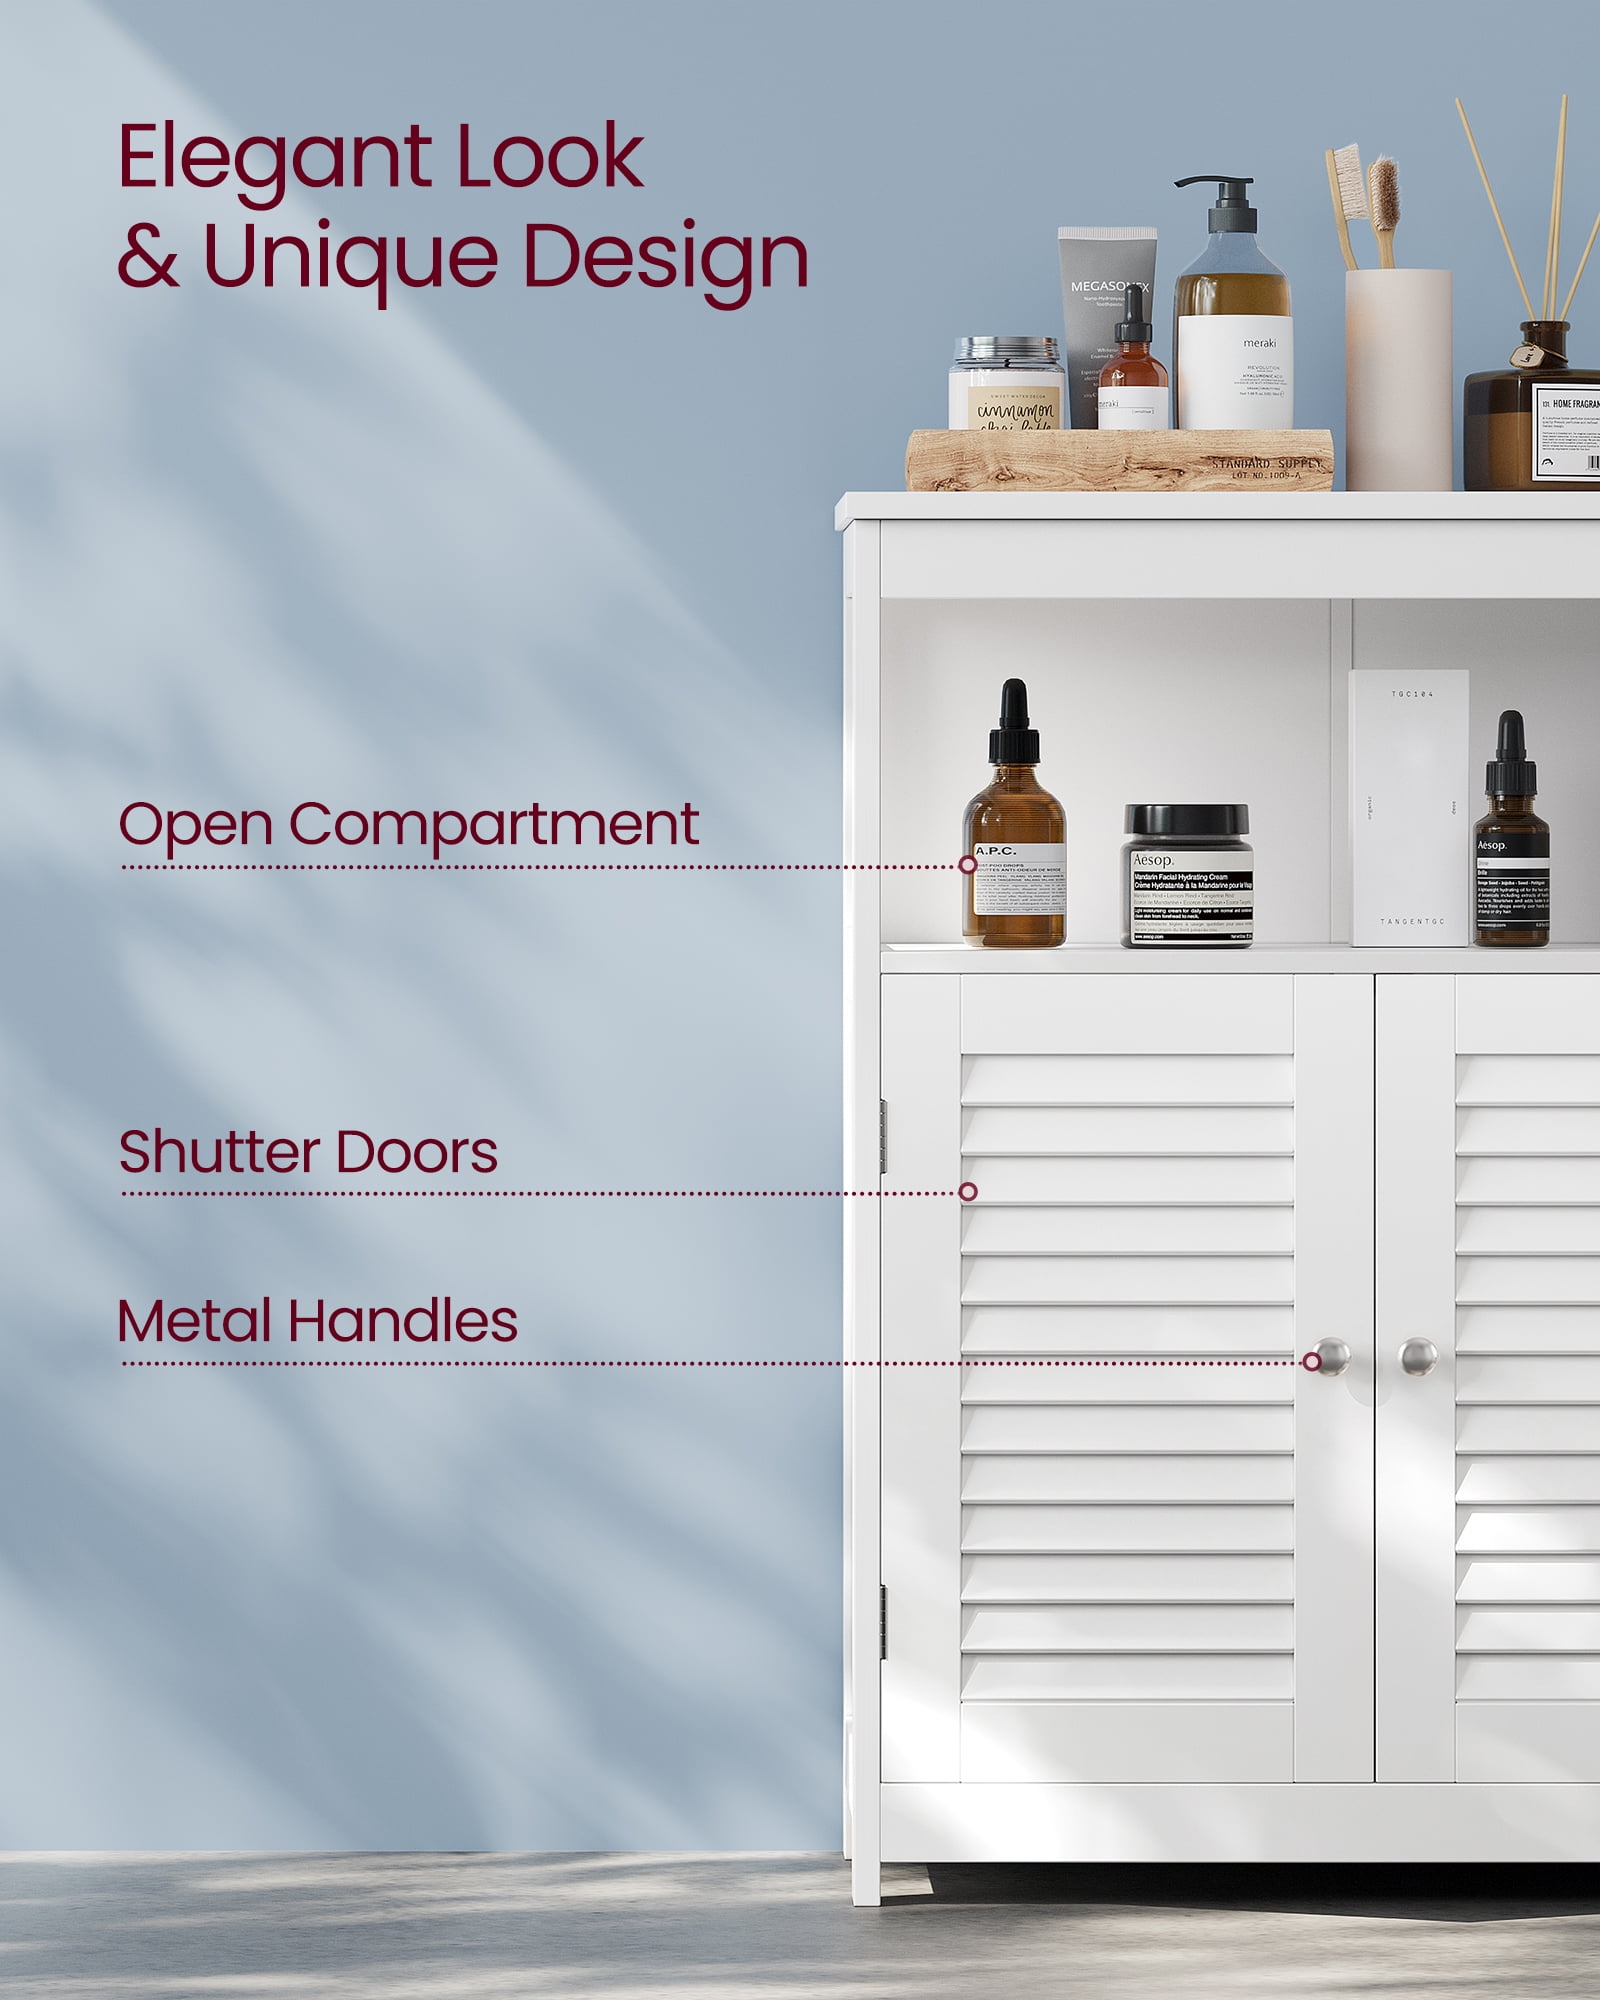 VASAGLE Double Door Bathroom Cabinet with Storage Tower & 3 Tier Organizer  Rack, 1 Piece - Harris Teeter